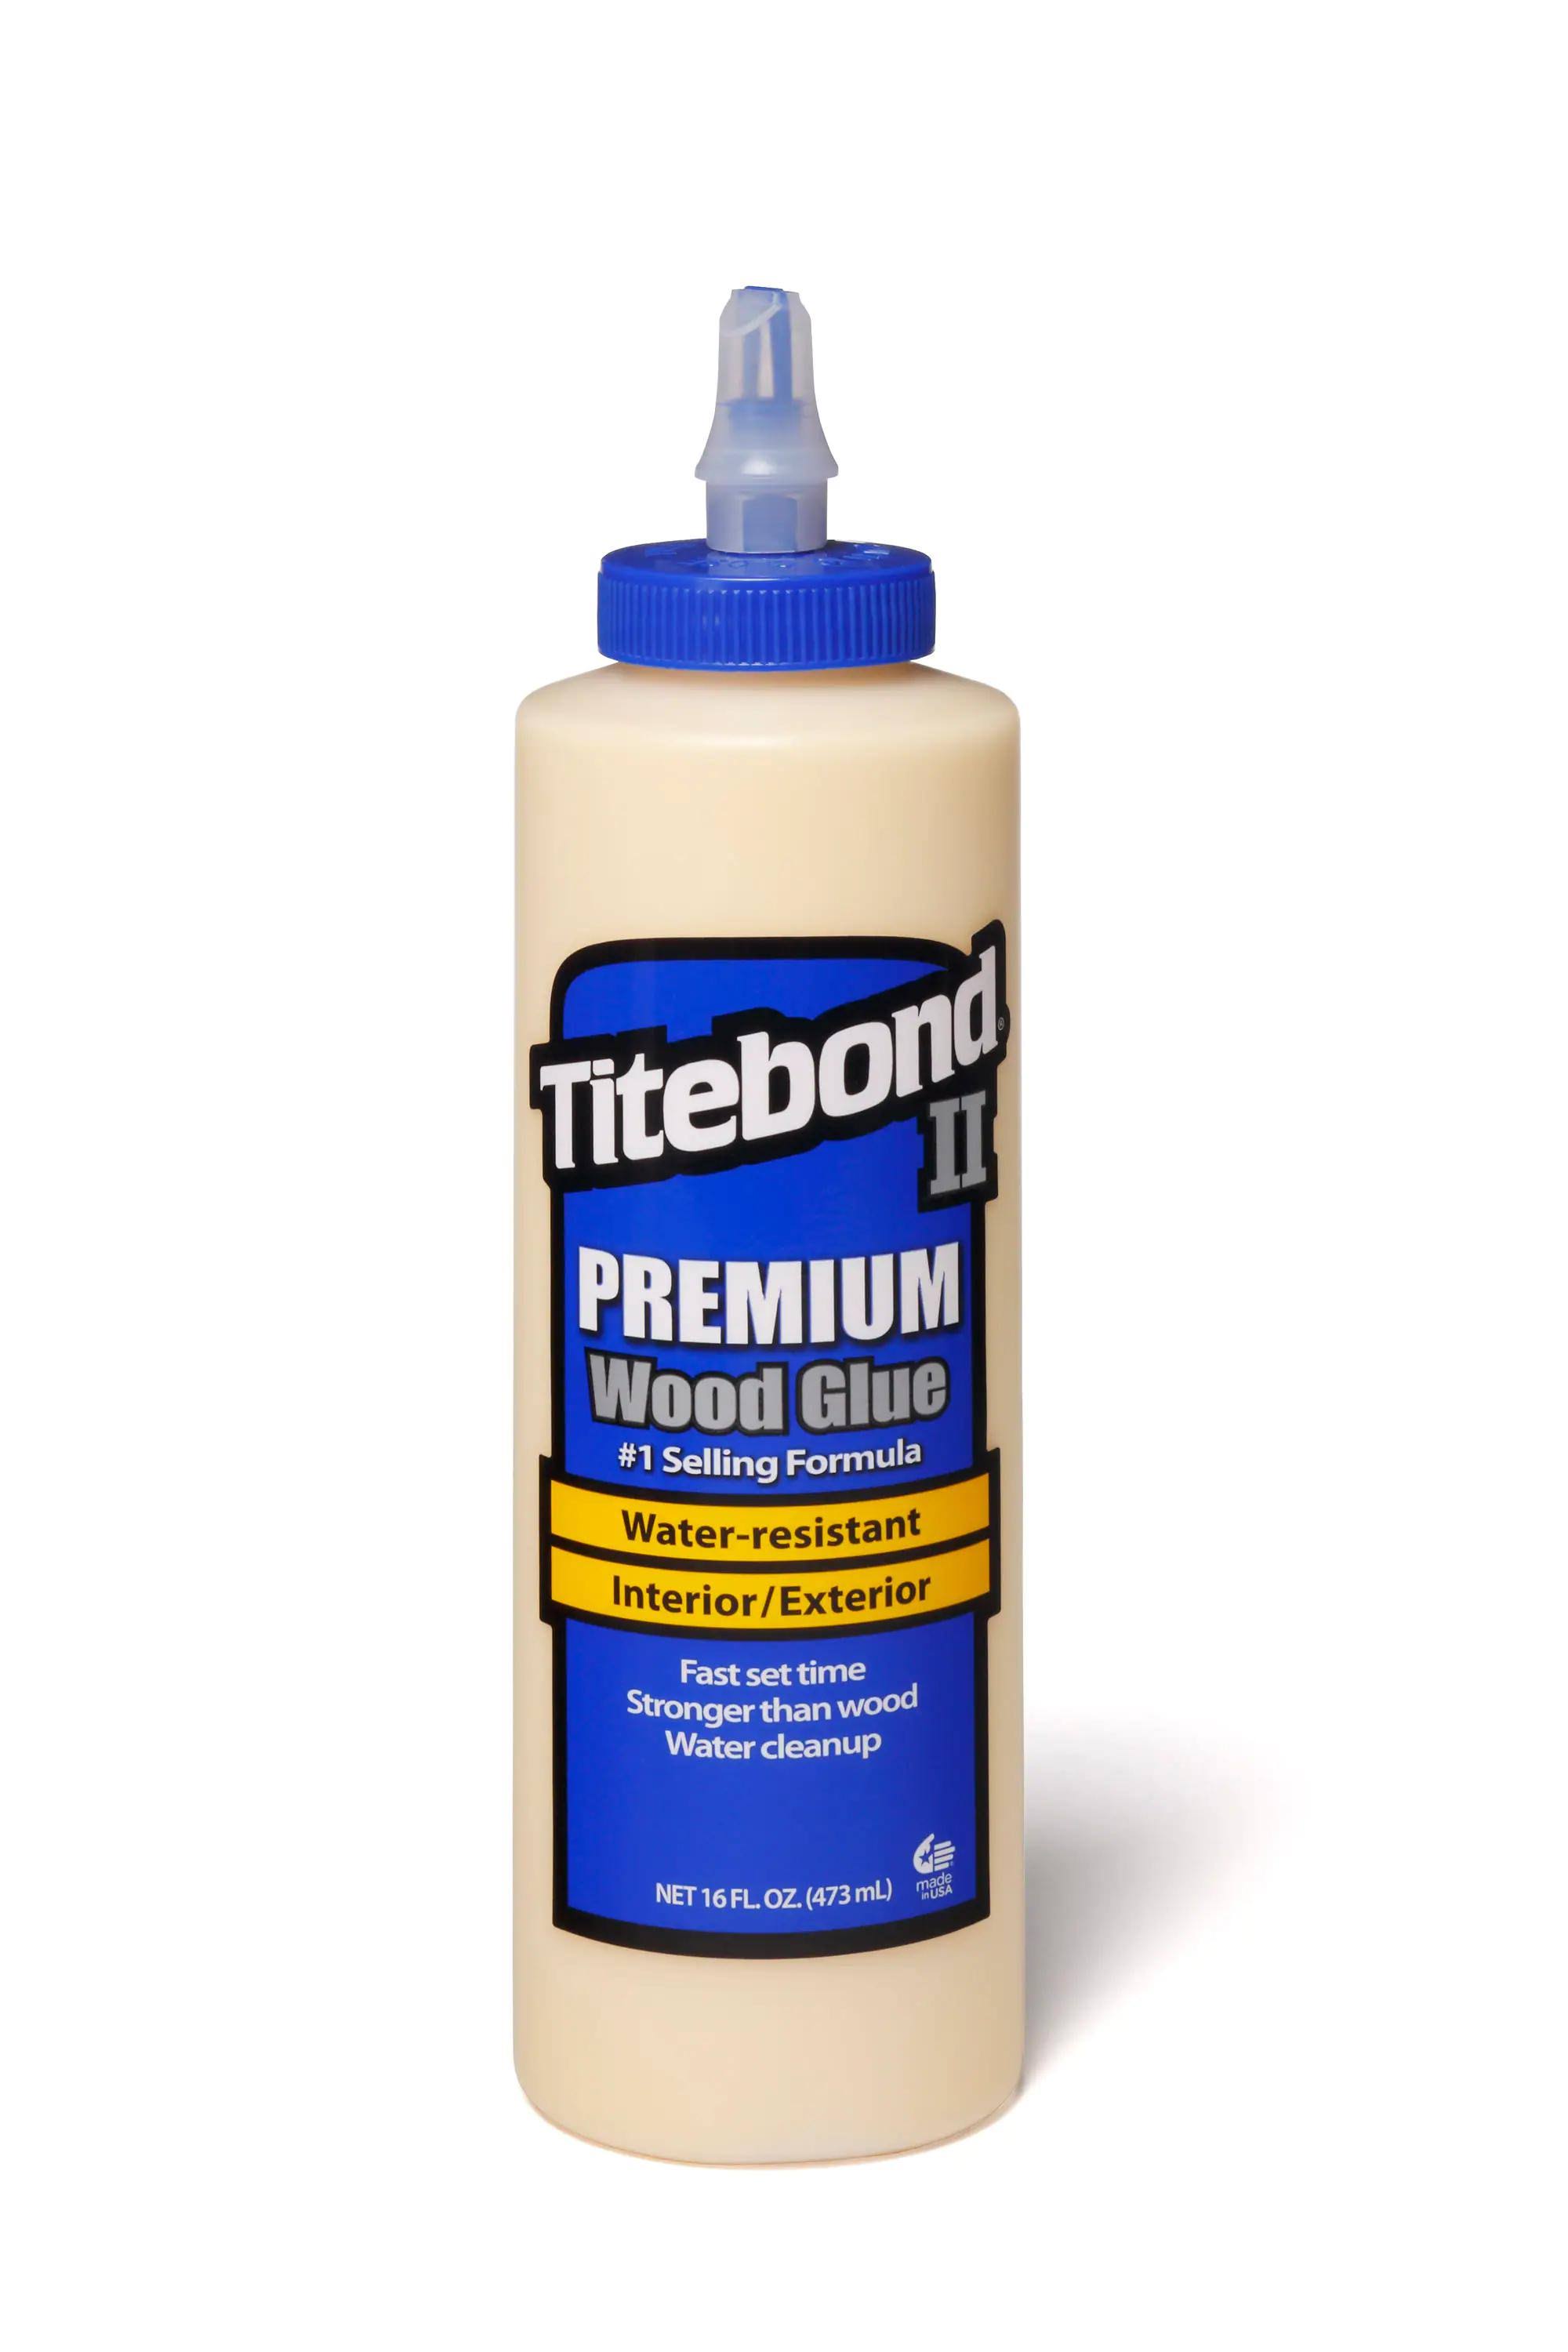 Weatherproof Titebond II Pemium Wood Glue